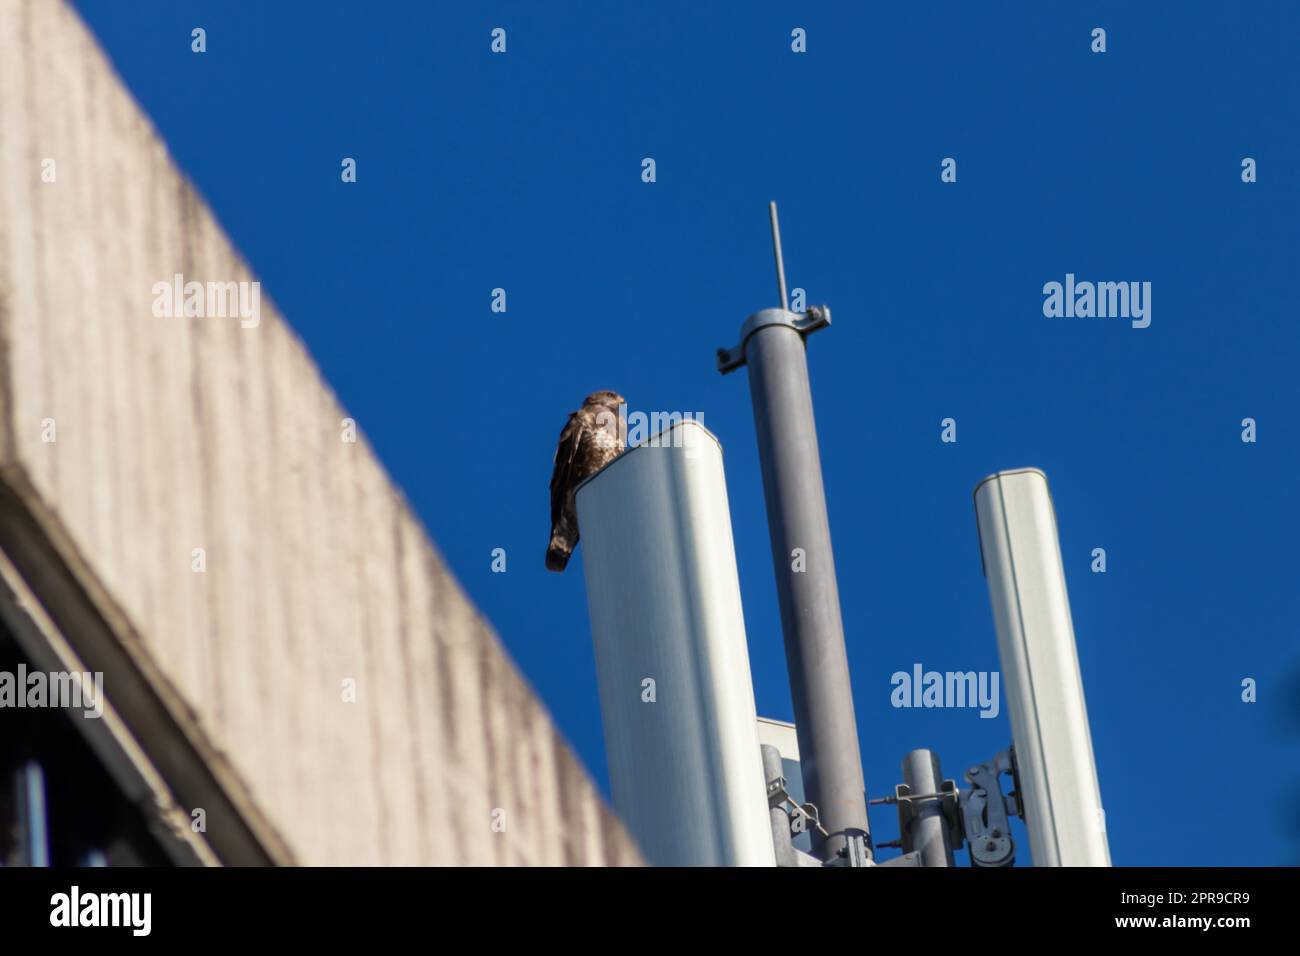 Ein aufmerksamer Falke sitzt auf einem Kommunikations- oder Antennenturm für Hochfrequenz-Internet mit 4G und 5G und hält Ausschau nach Beute mit klarem blauem Hintergrund, die auf der Jagd nach fliegenden Raptoren in der Stadt ist Stockfoto